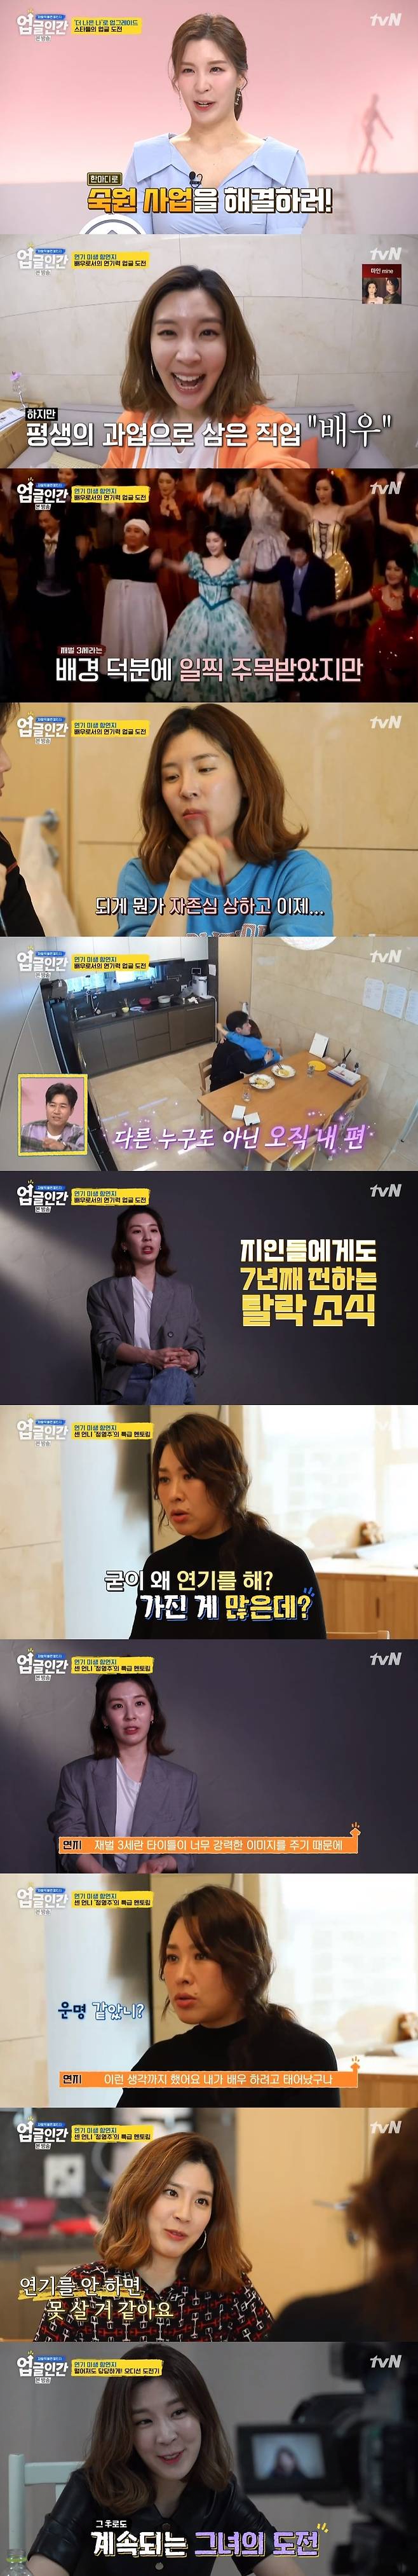 tvN '업글인간' 캡처 © 뉴스1